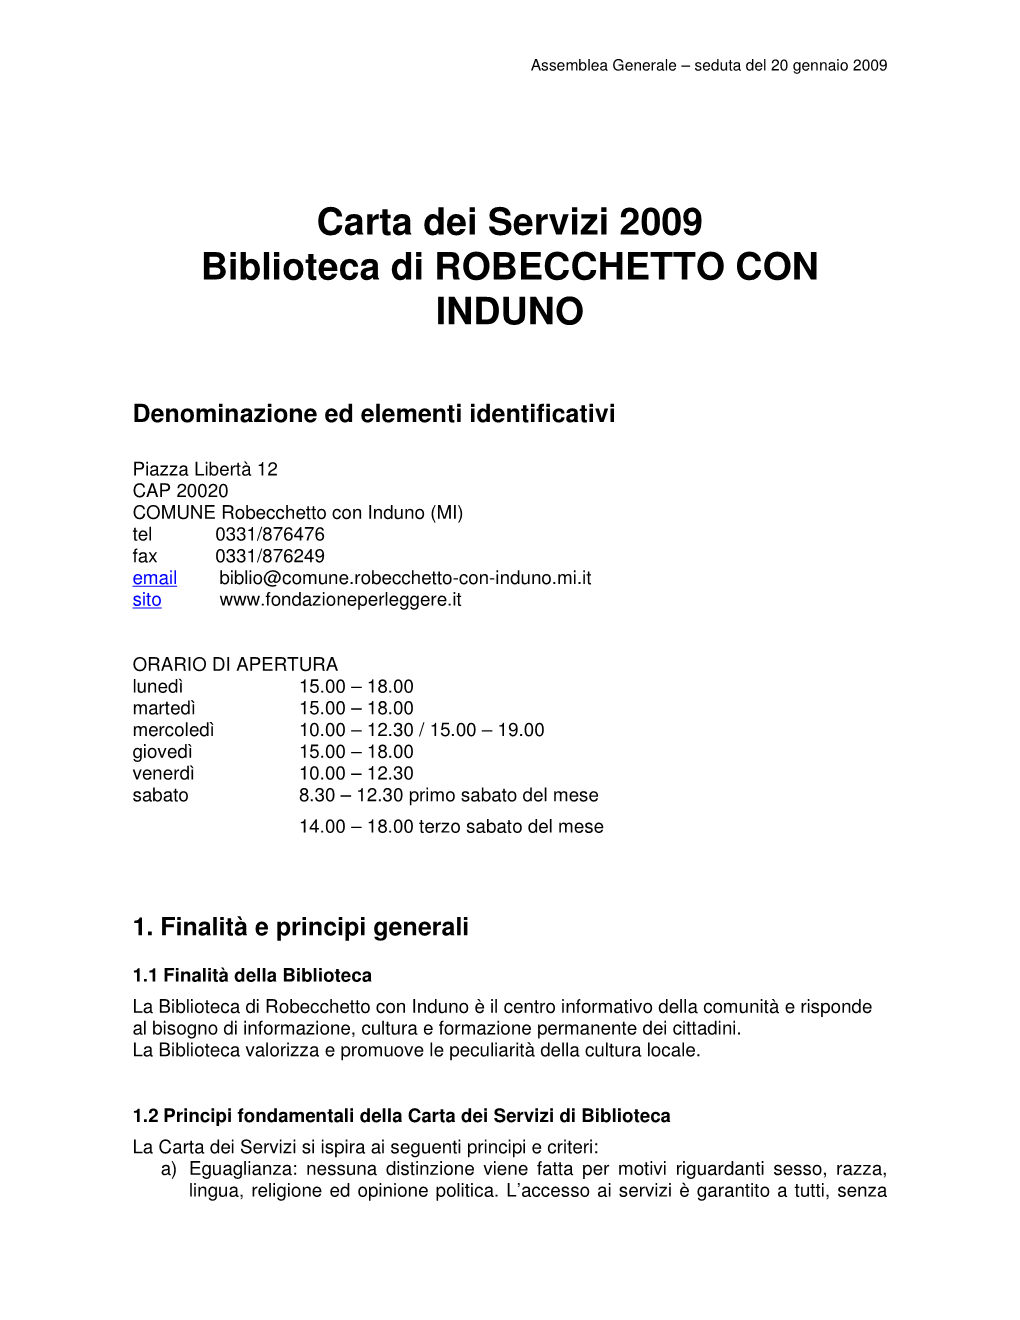 Carta Dei Servizi 2009 Biblioteca Di ROBECCHETTO CON INDUNO